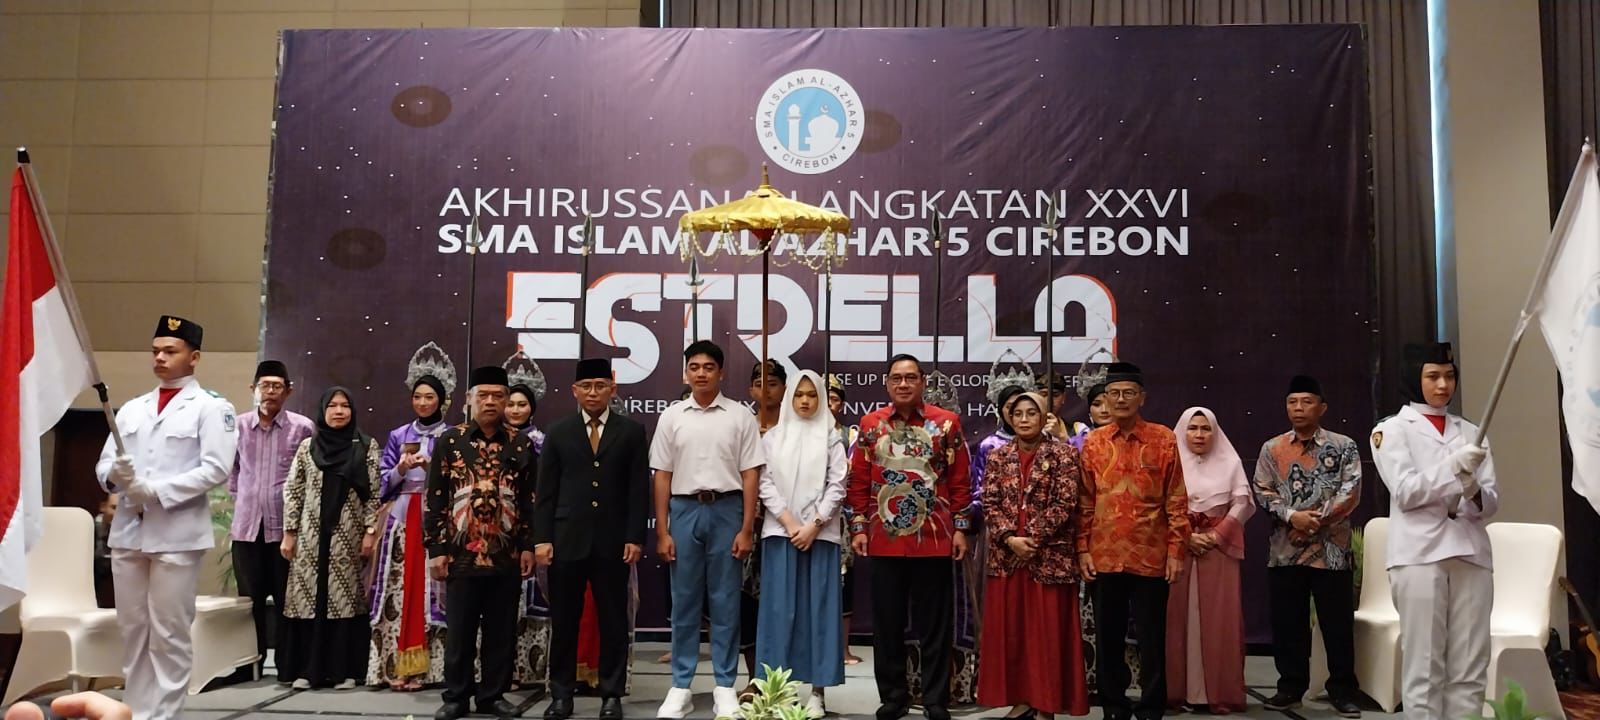 SMA Islam Al Azhar 5 Cirebon Menggelar Akhirussanah Angkatan XXVI